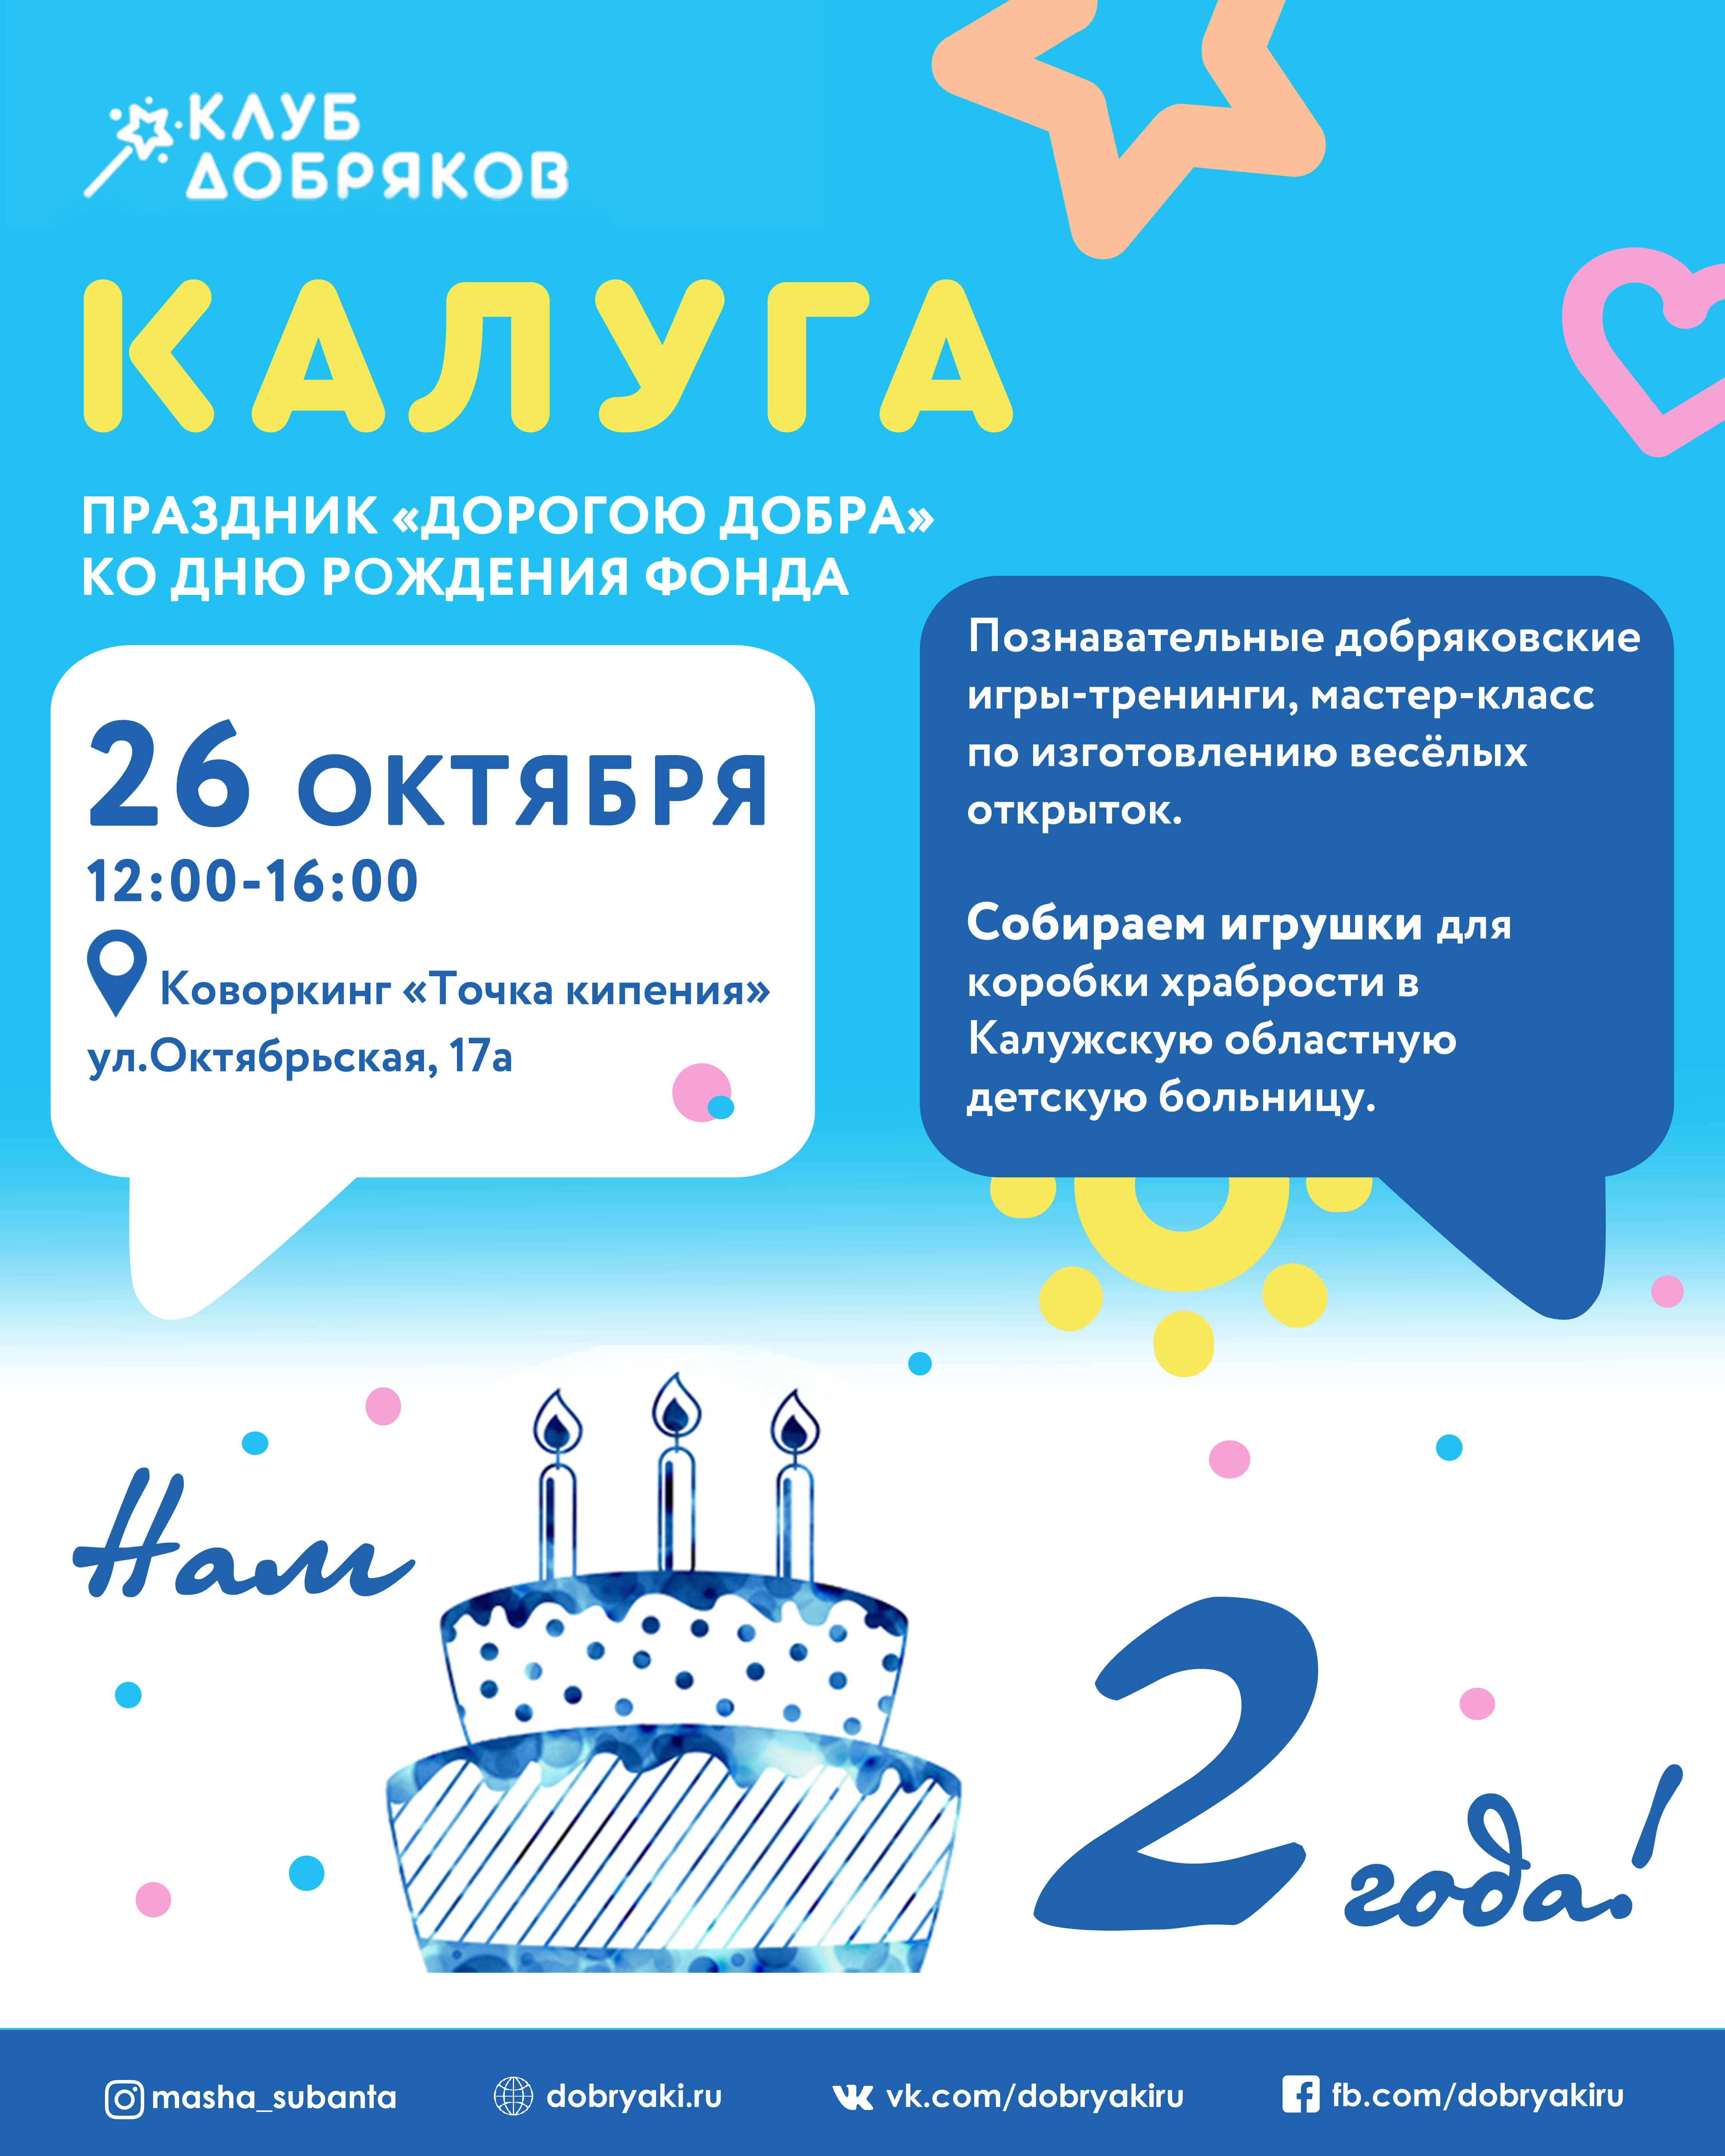 В Калуге состоится праздник «Дорогою добра» ко дню рождения фонда